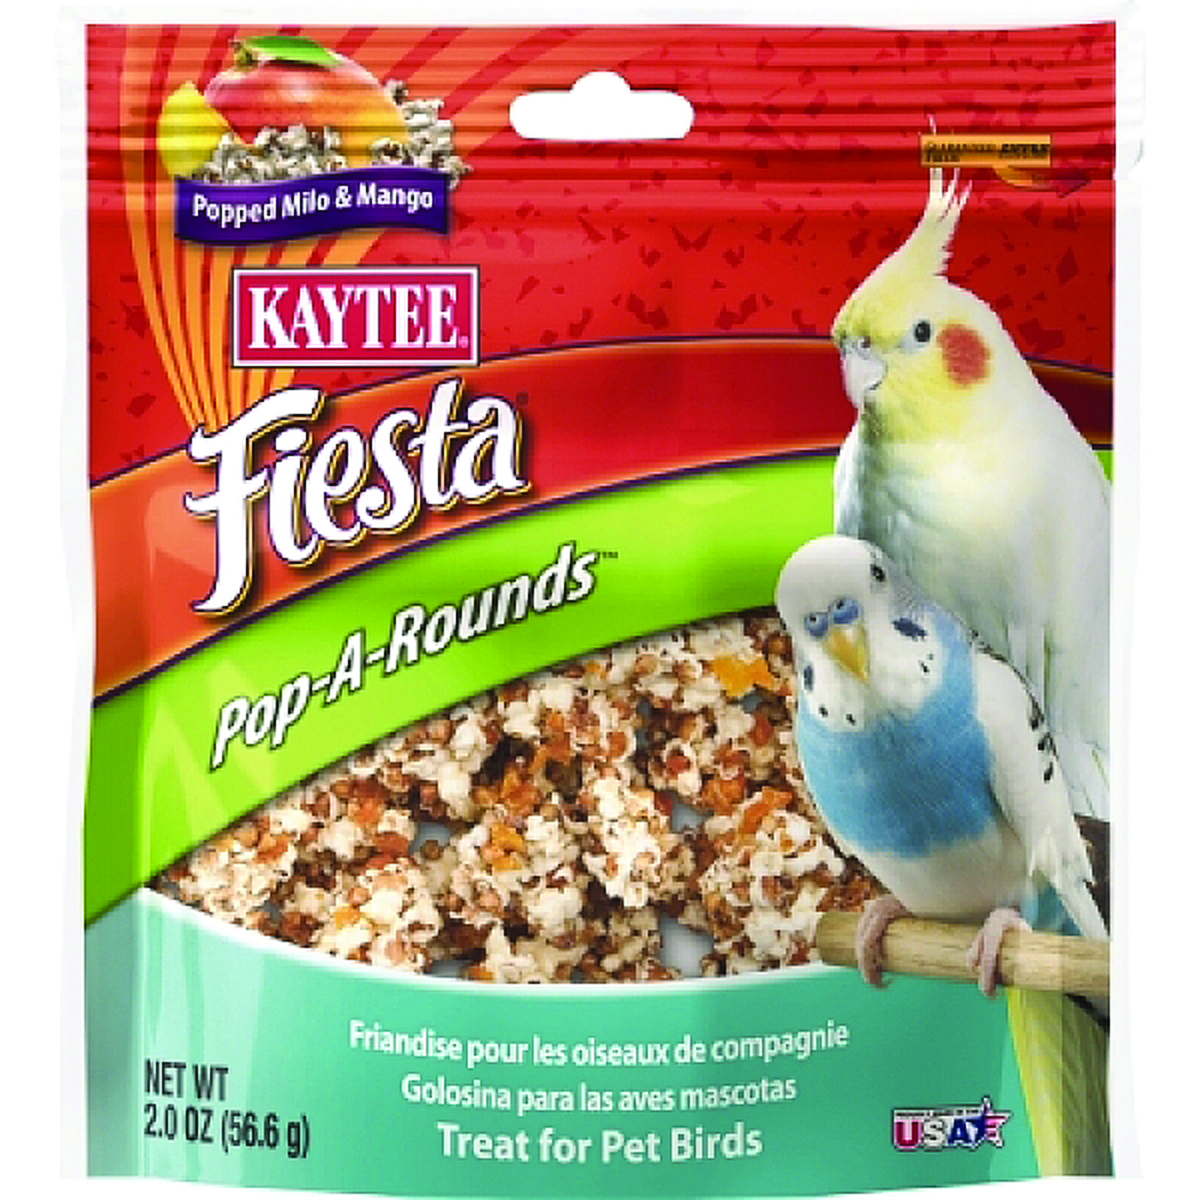 FIESTA POP-A-ROUNDS TREAT - PET BIRDS